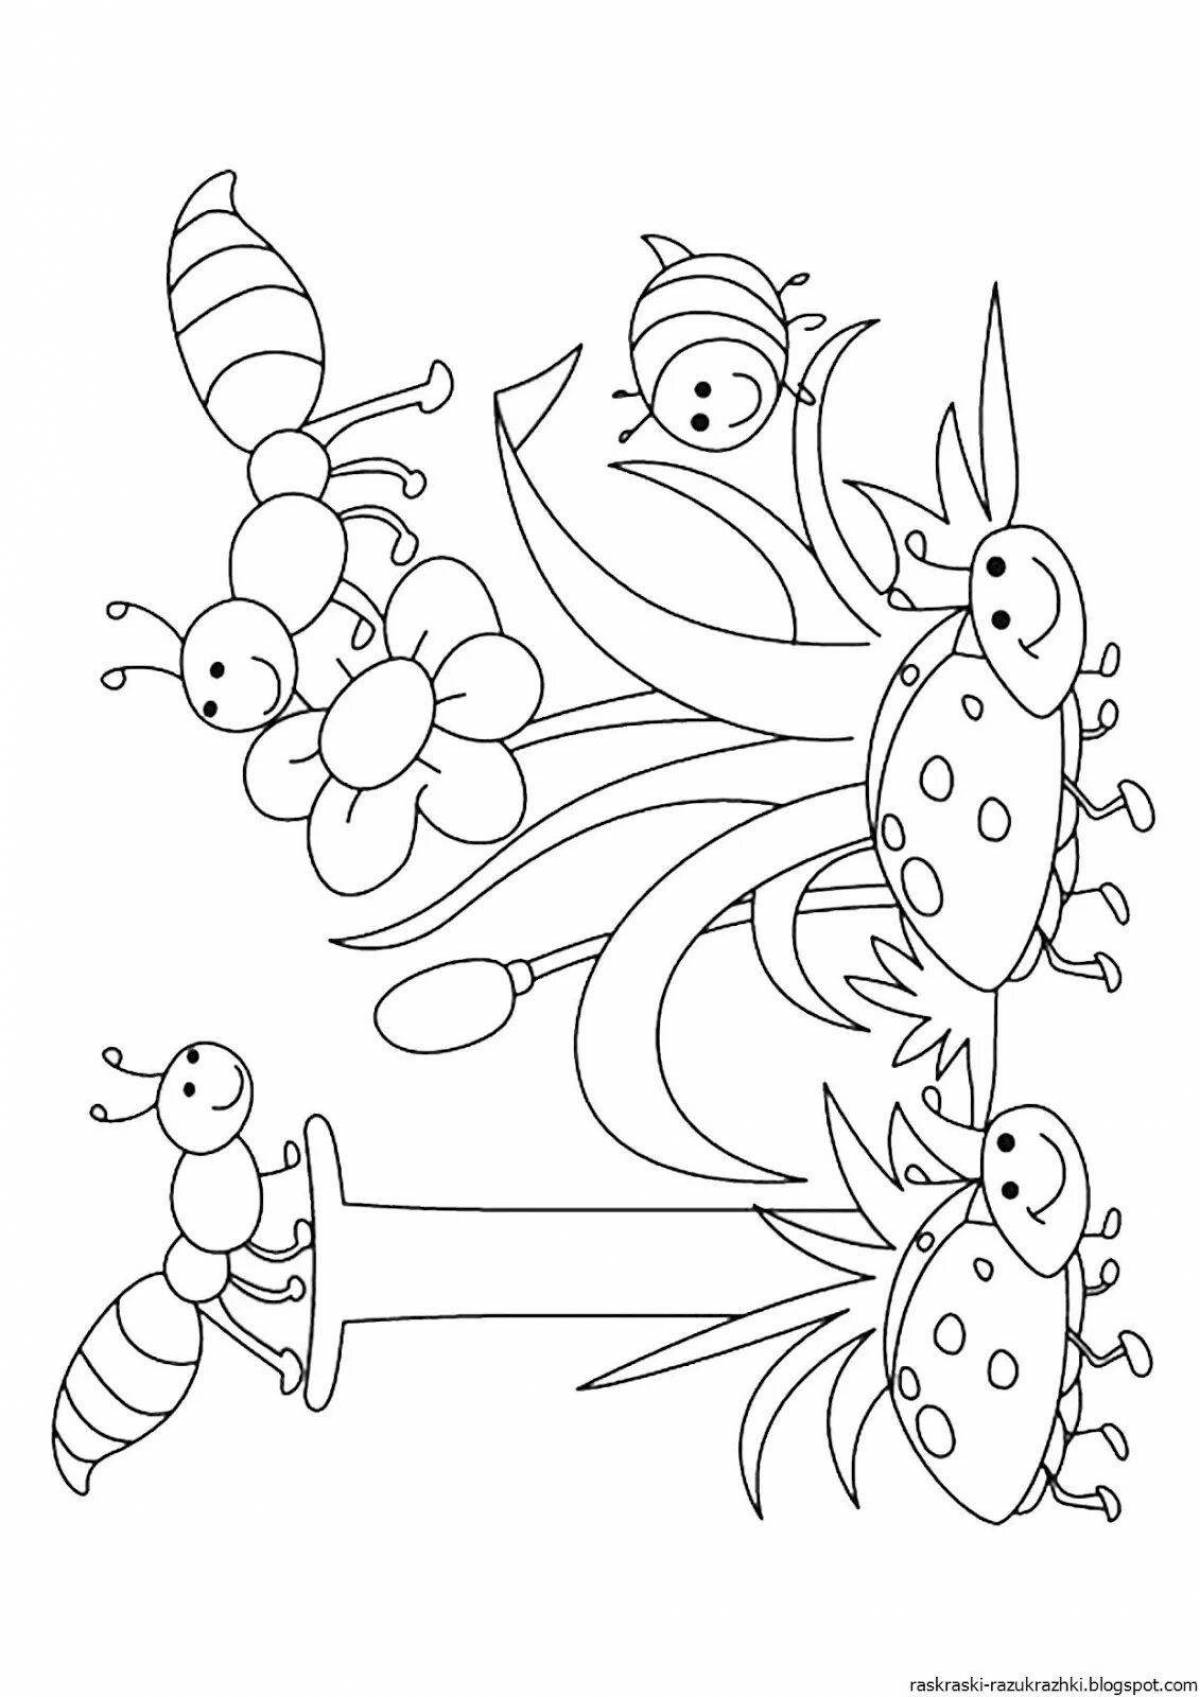 Раскраски с игривыми насекомыми для детей 3-4 лет